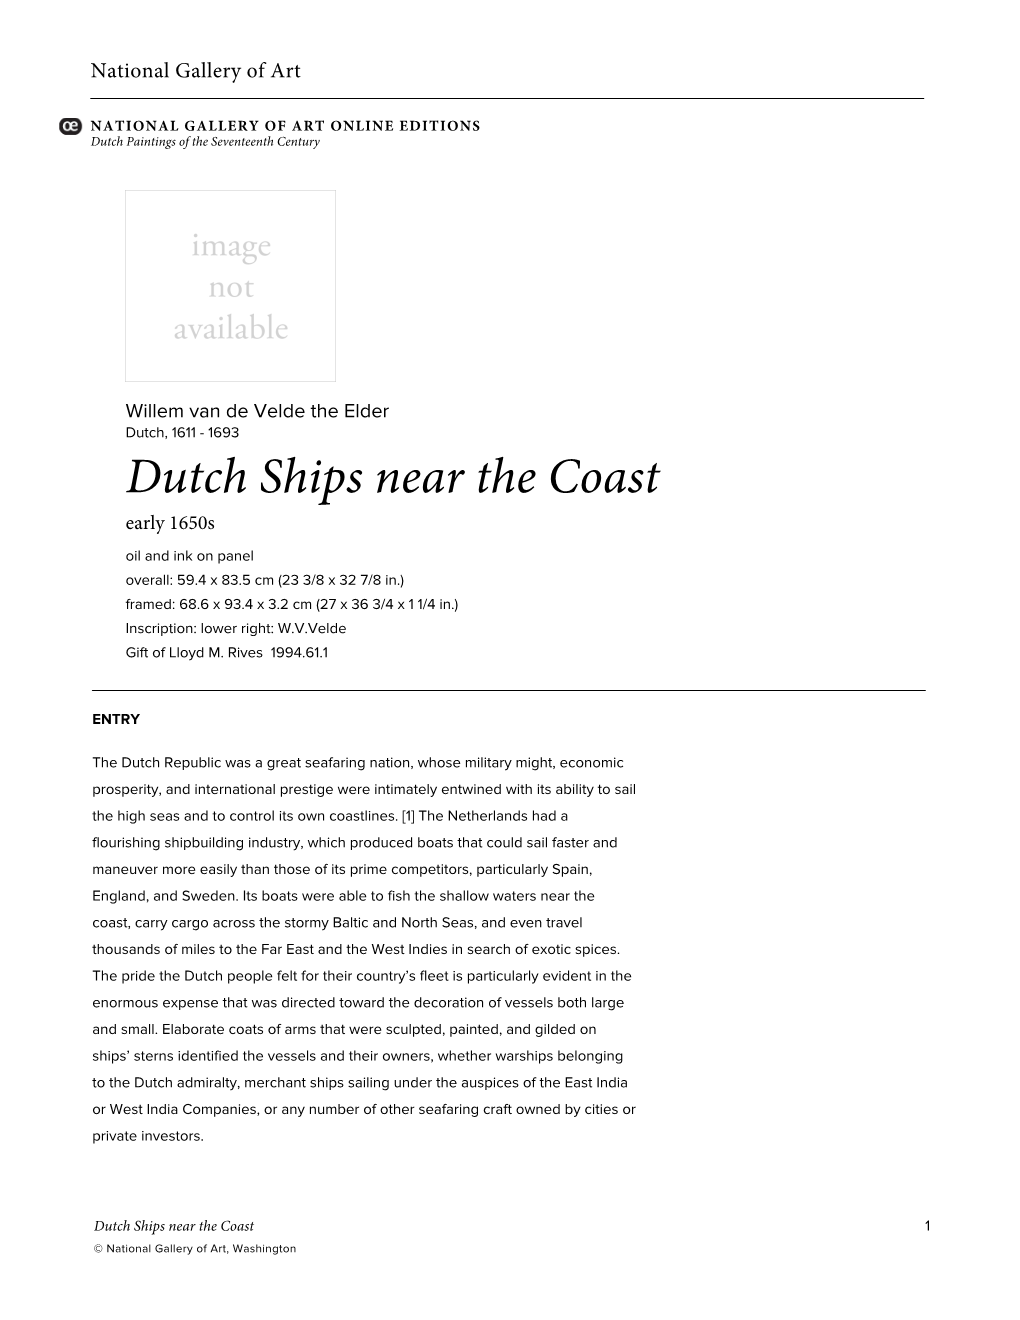 Dutch Ships Near the Coast